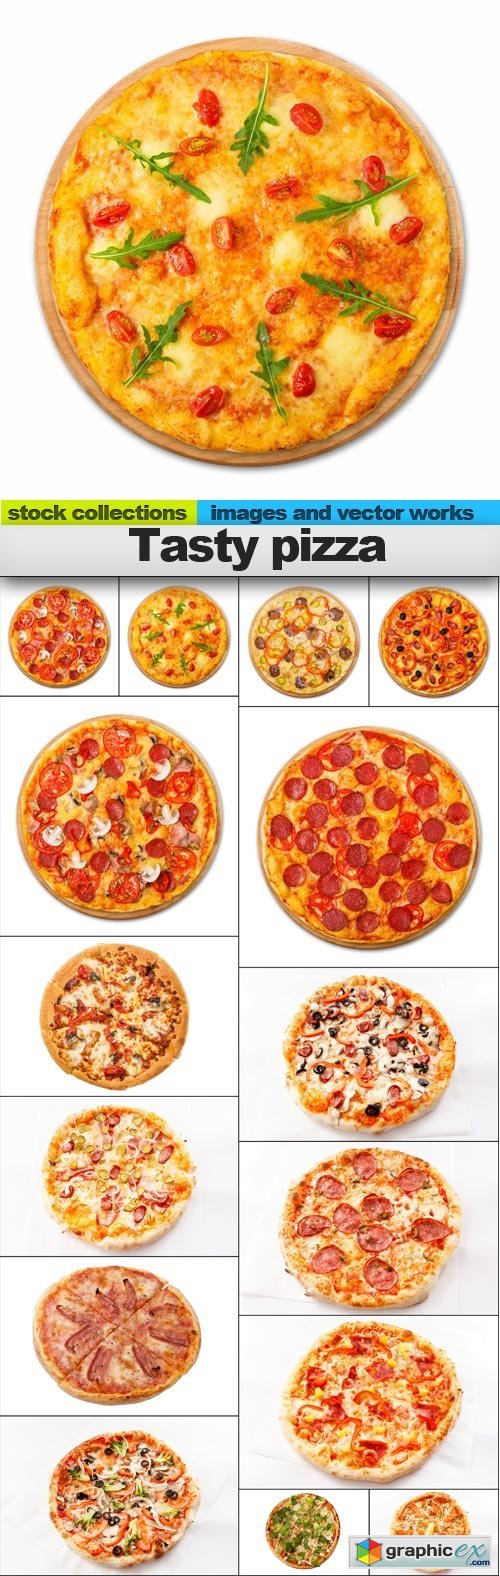 Tasty pizza, 15 x UHQ JPEG